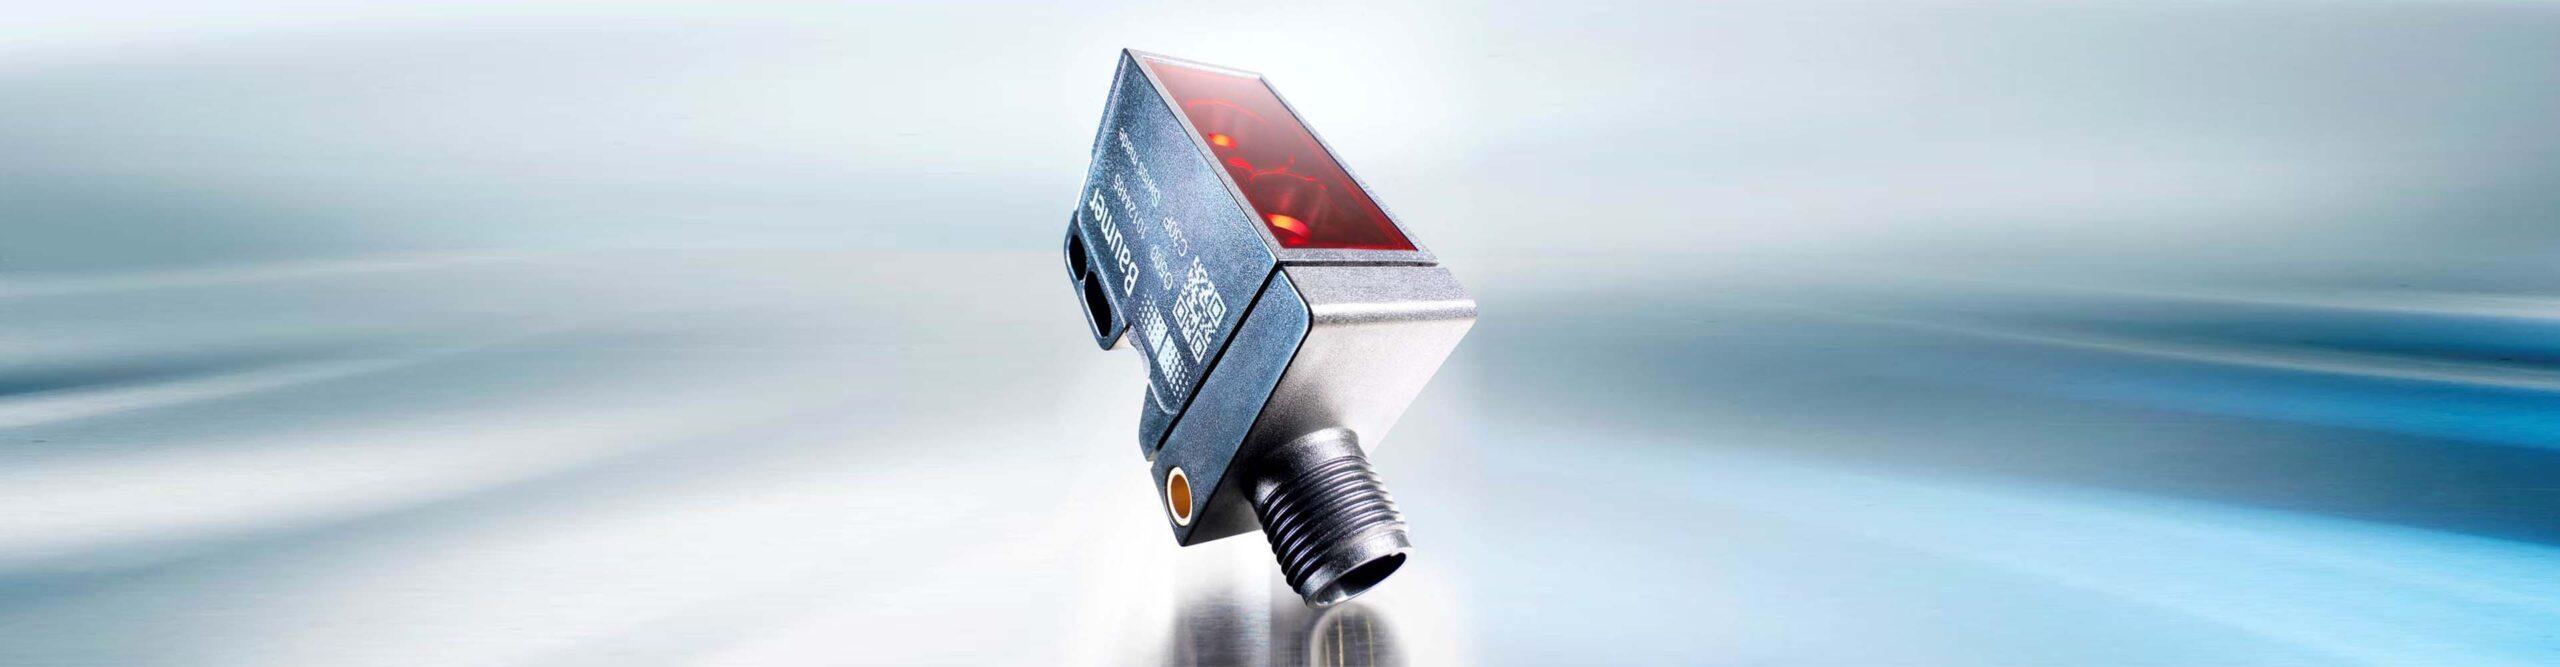 Product Optoelektronische Sensoren – Sedax AG Zürich image